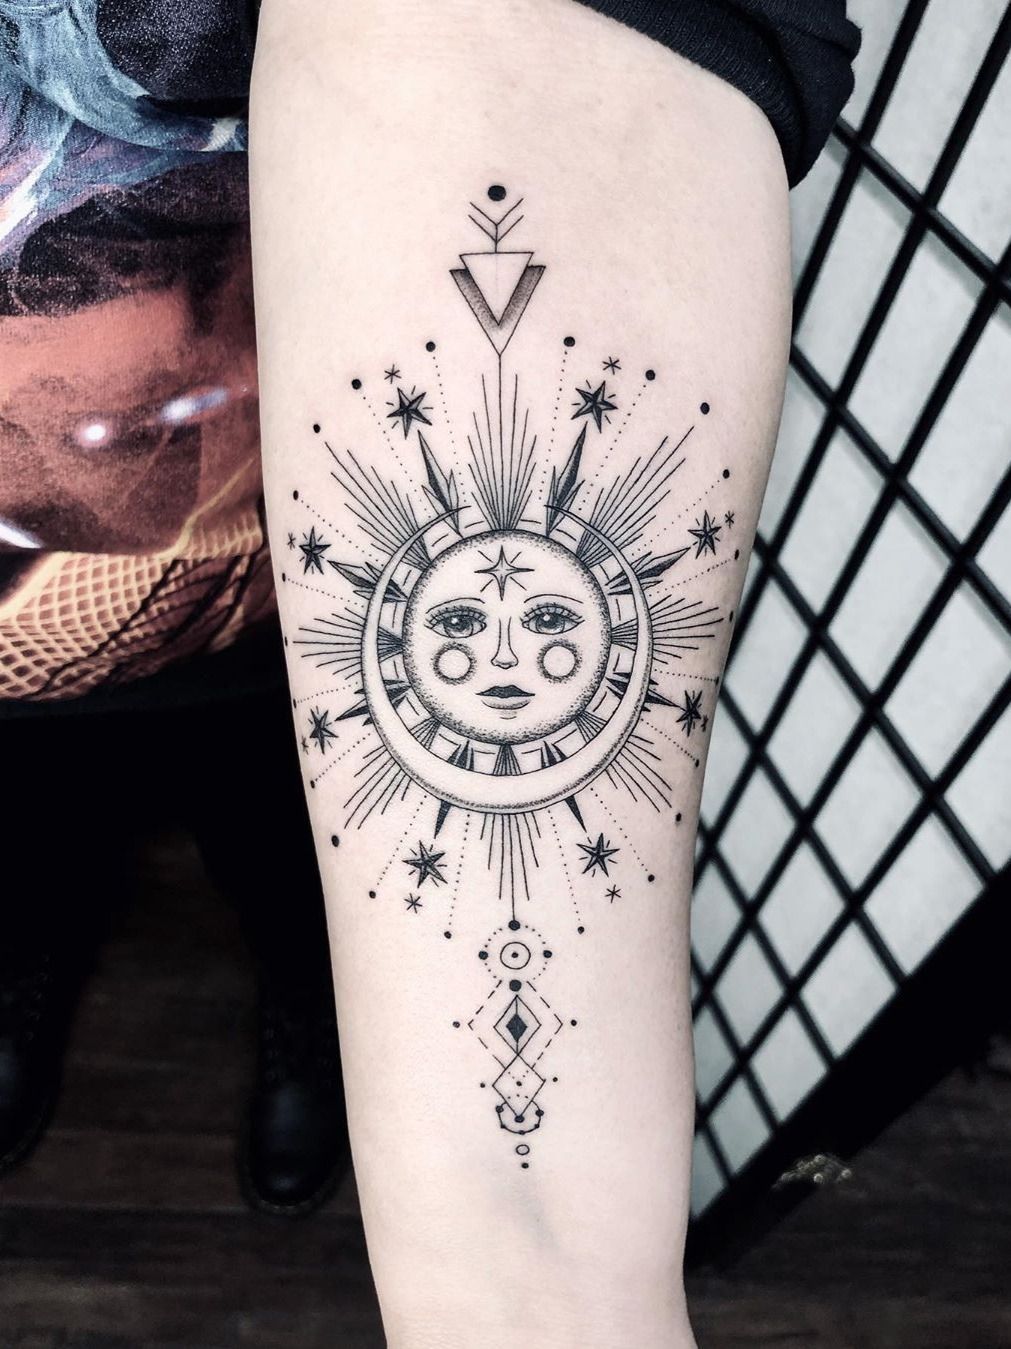 Sentimental sun moon  stars tattoo  Tattoo contest  99designs